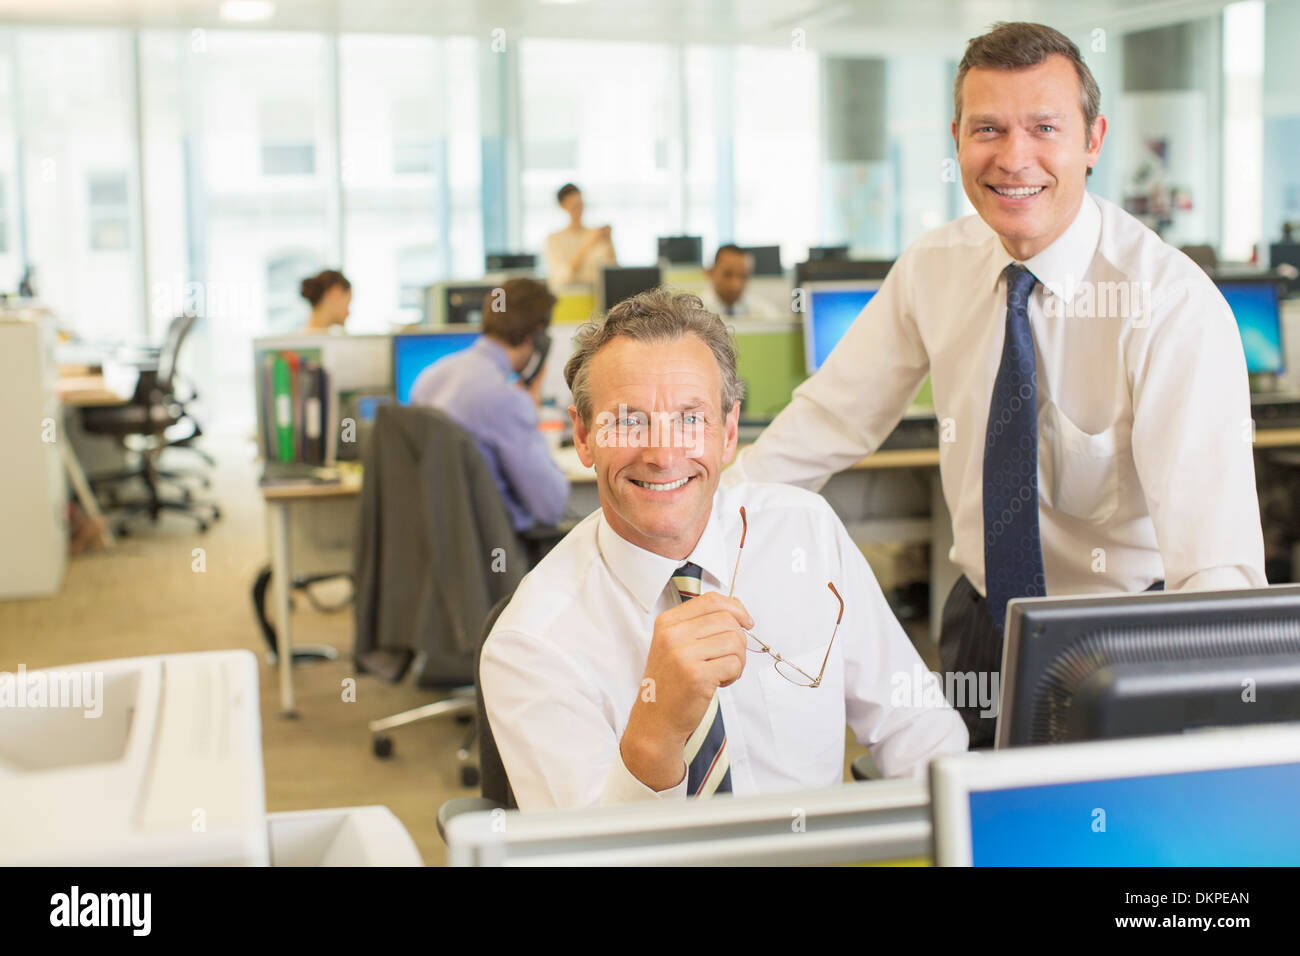 Businessmen smiling in office Banque D'Images